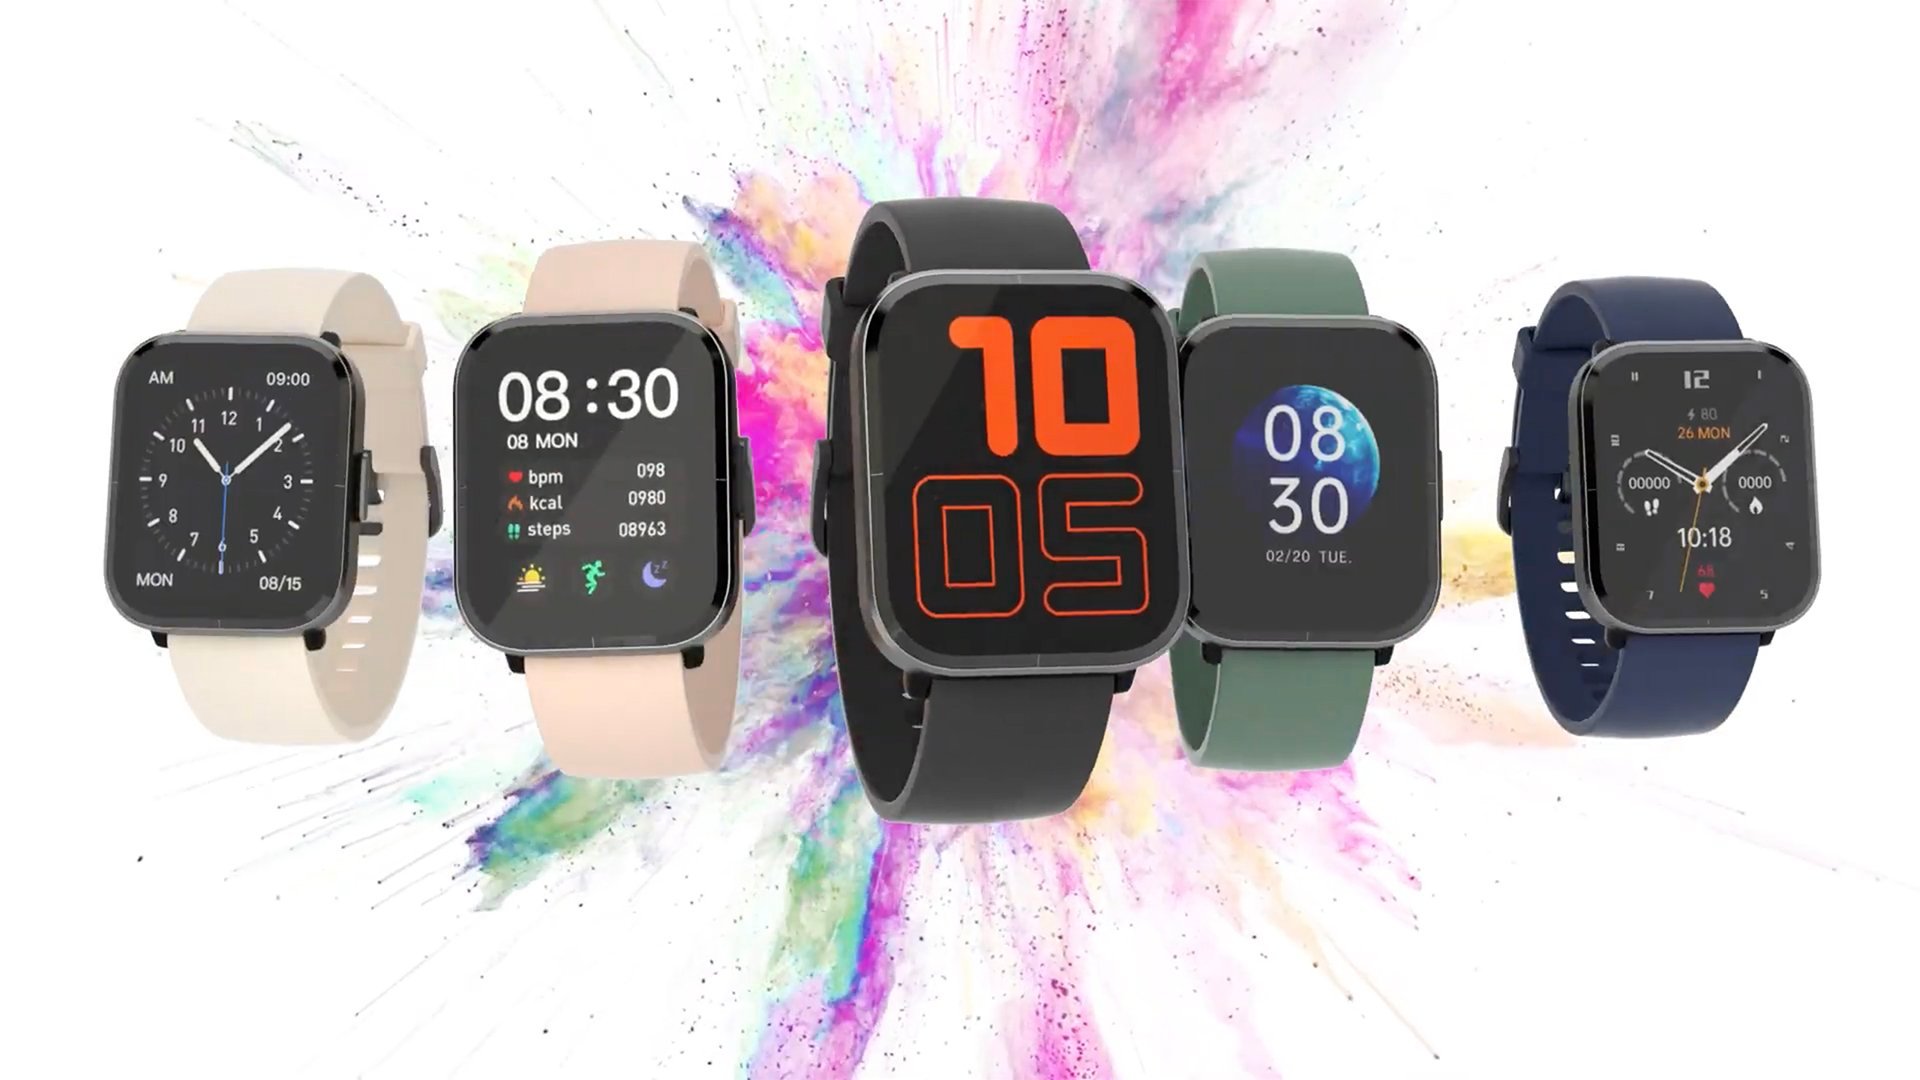 Tout juste dévoilée, la nouvelle montre connectée Mibro Color s’offre déjà une énorme promotion !